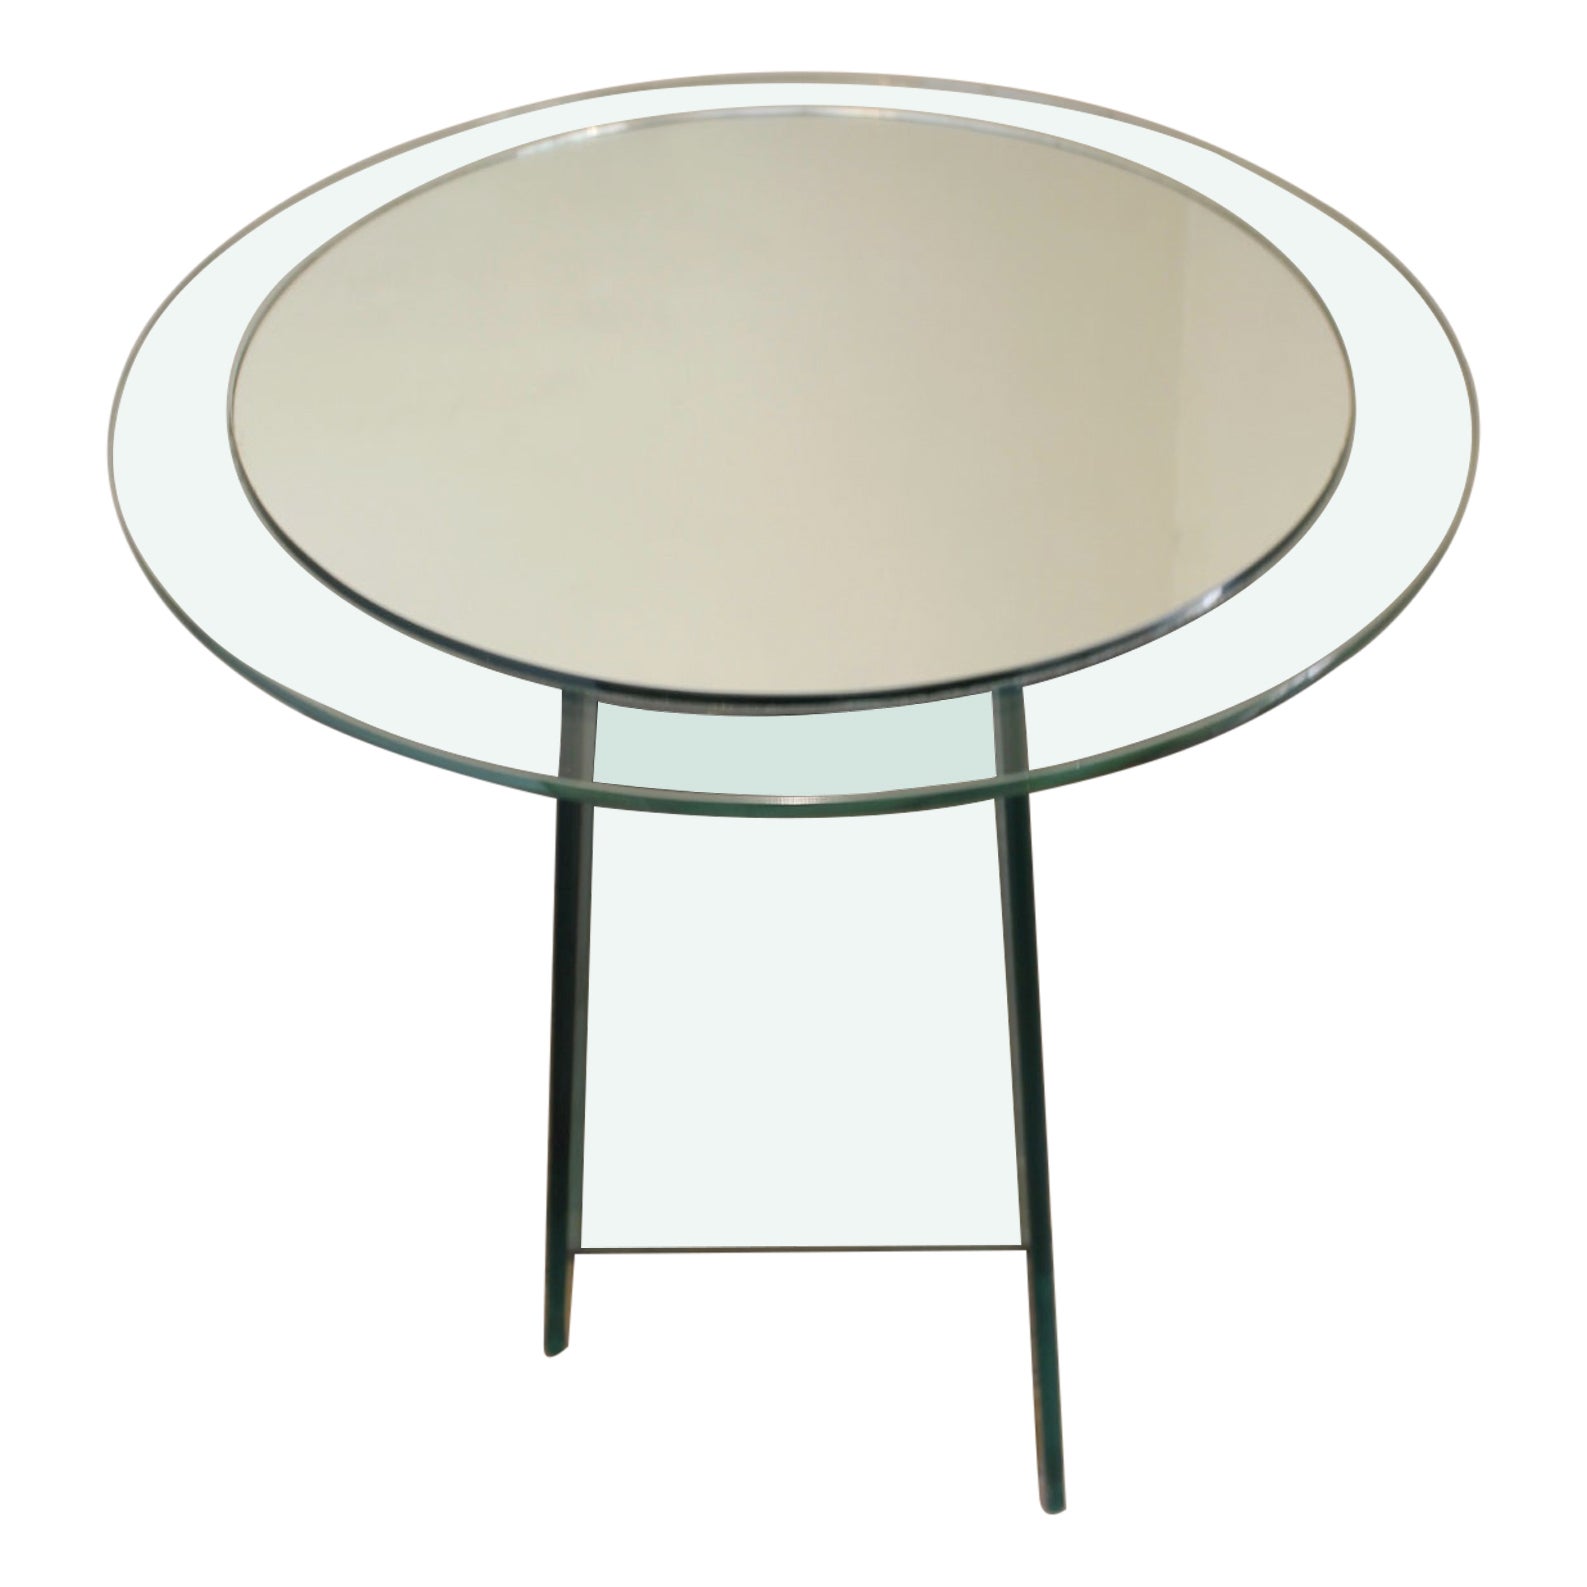 Tisch aus Glas und Spiegeln, asymmetrisch, Fontana Arte-Stil, 1970